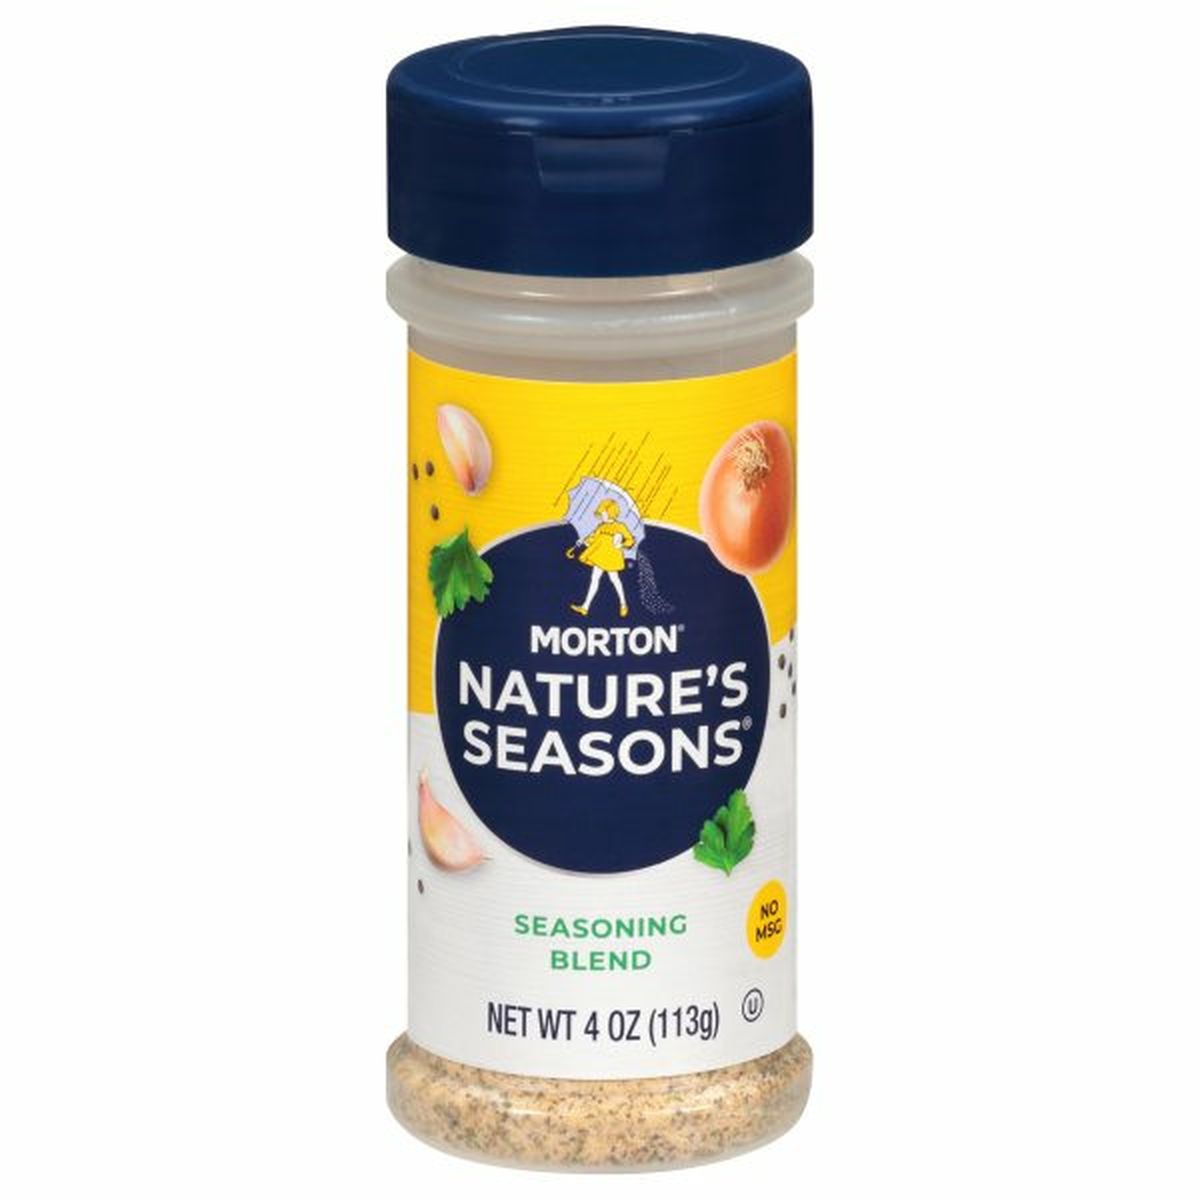 Calories in Morton Nature's Seasons Seasoning Blend